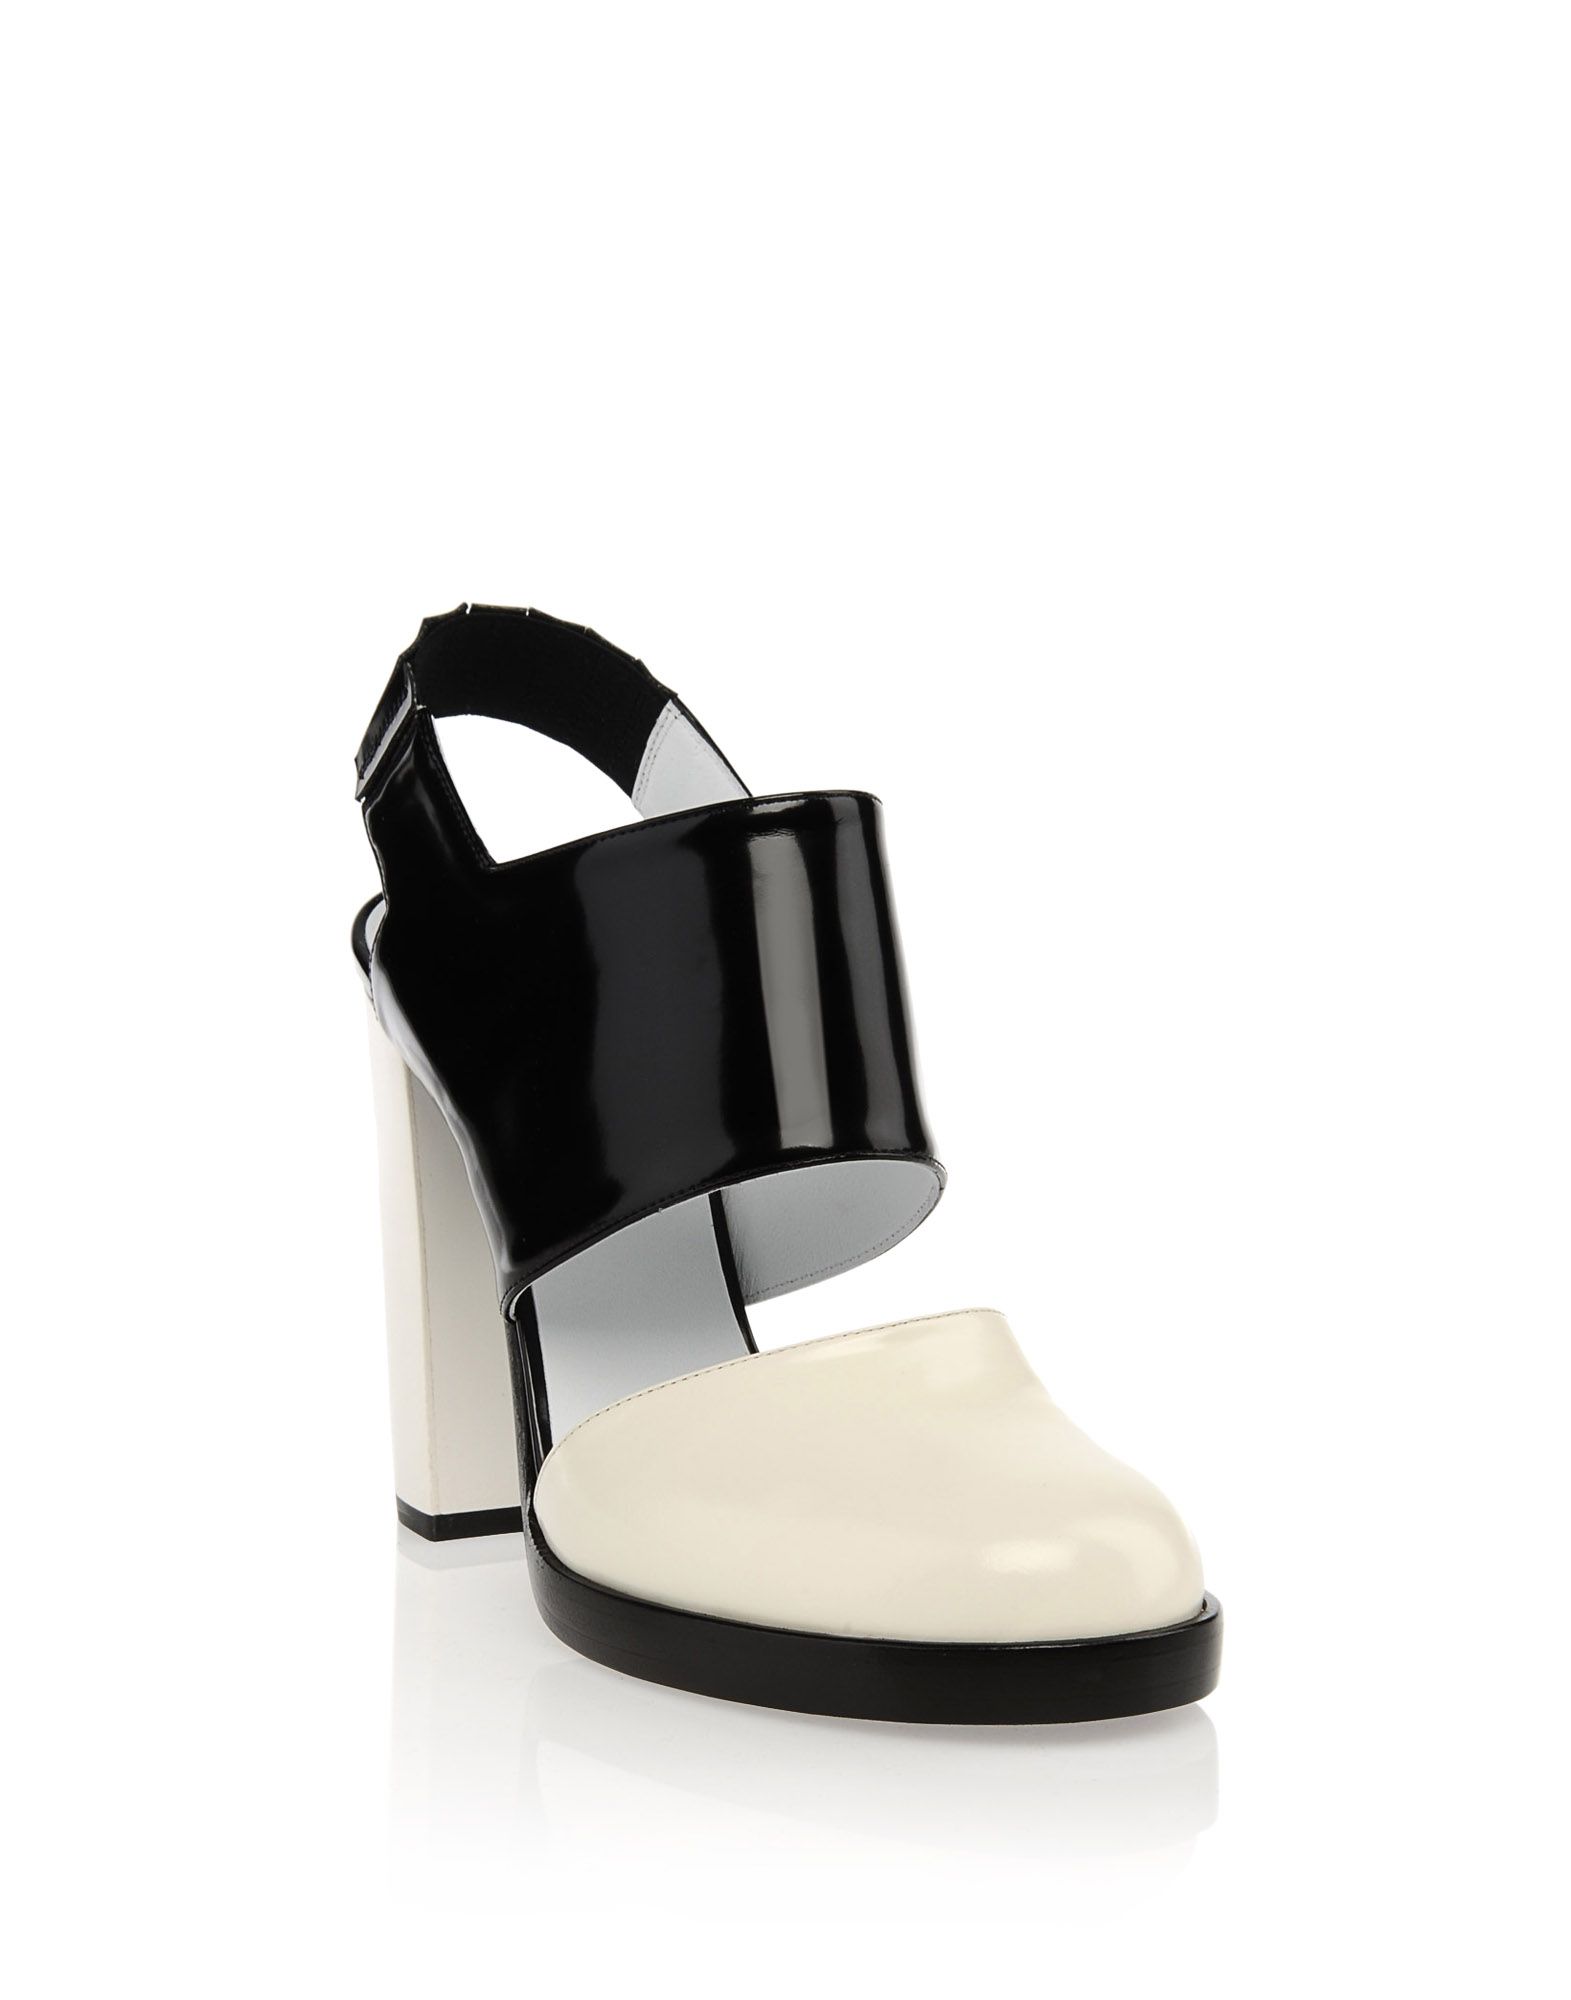 High-heeled sandals Women - Shoes Women on Jil Sander Online Store